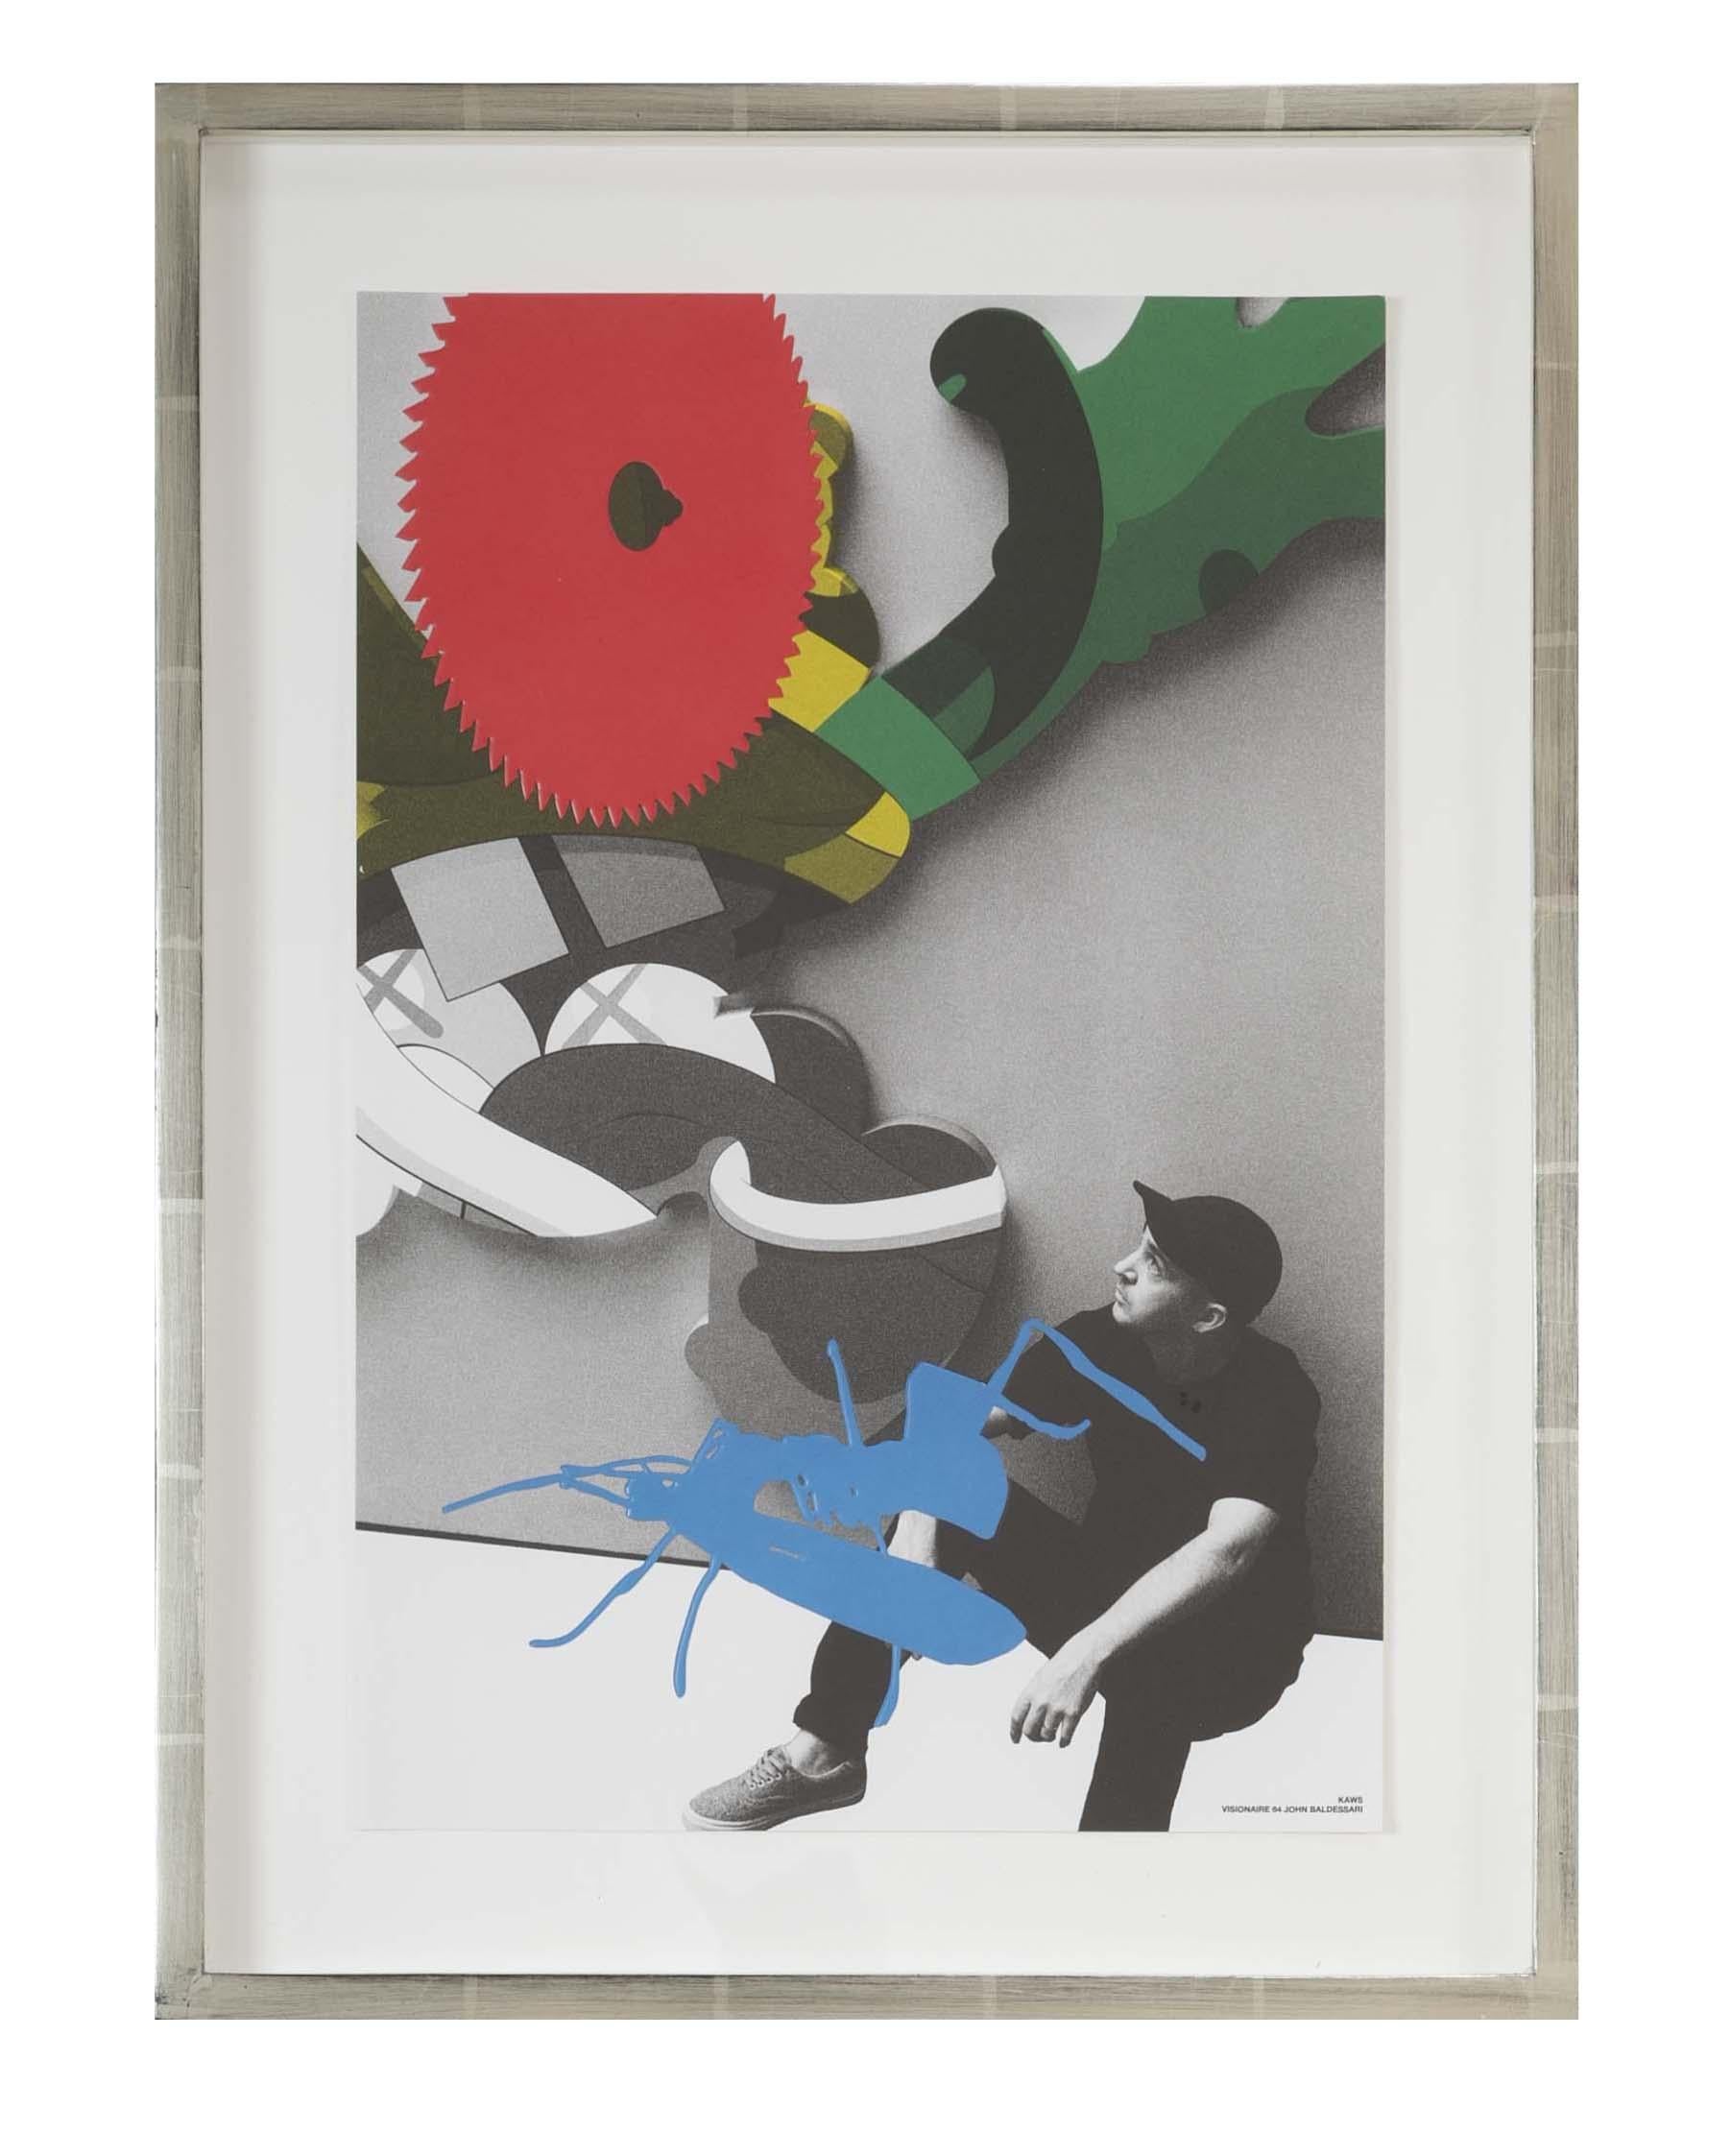 ART VISIONNAIRE/64 : JOHN BALDESSARI 

Ce projet de Visionaire en collaboration avec John Baldessari exploite la facilité actuelle de l'assemblage numérique et de l'autoportrait.  Visionaire a associé le légendaire artiste conceptuel John Baldessari